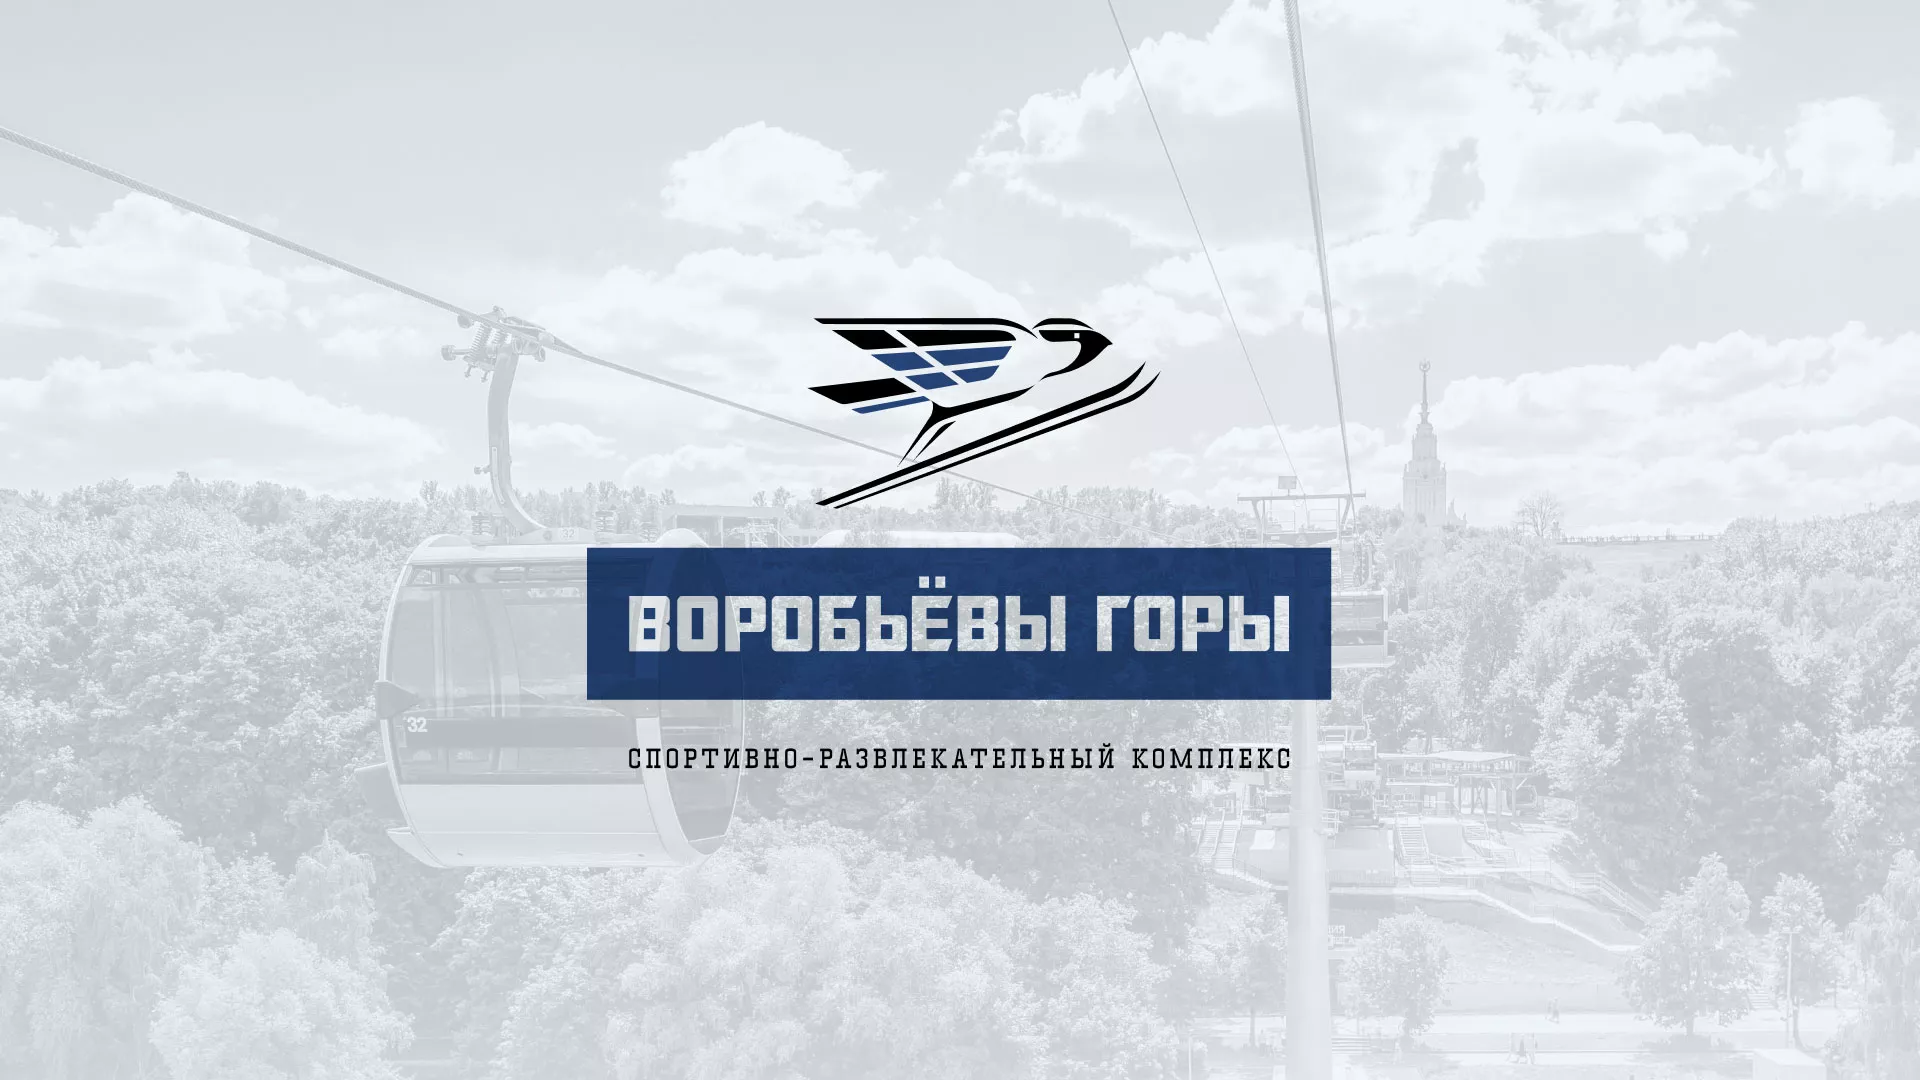 Разработка сайта в Белинском для спортивно-развлекательного комплекса «Воробьёвы горы»